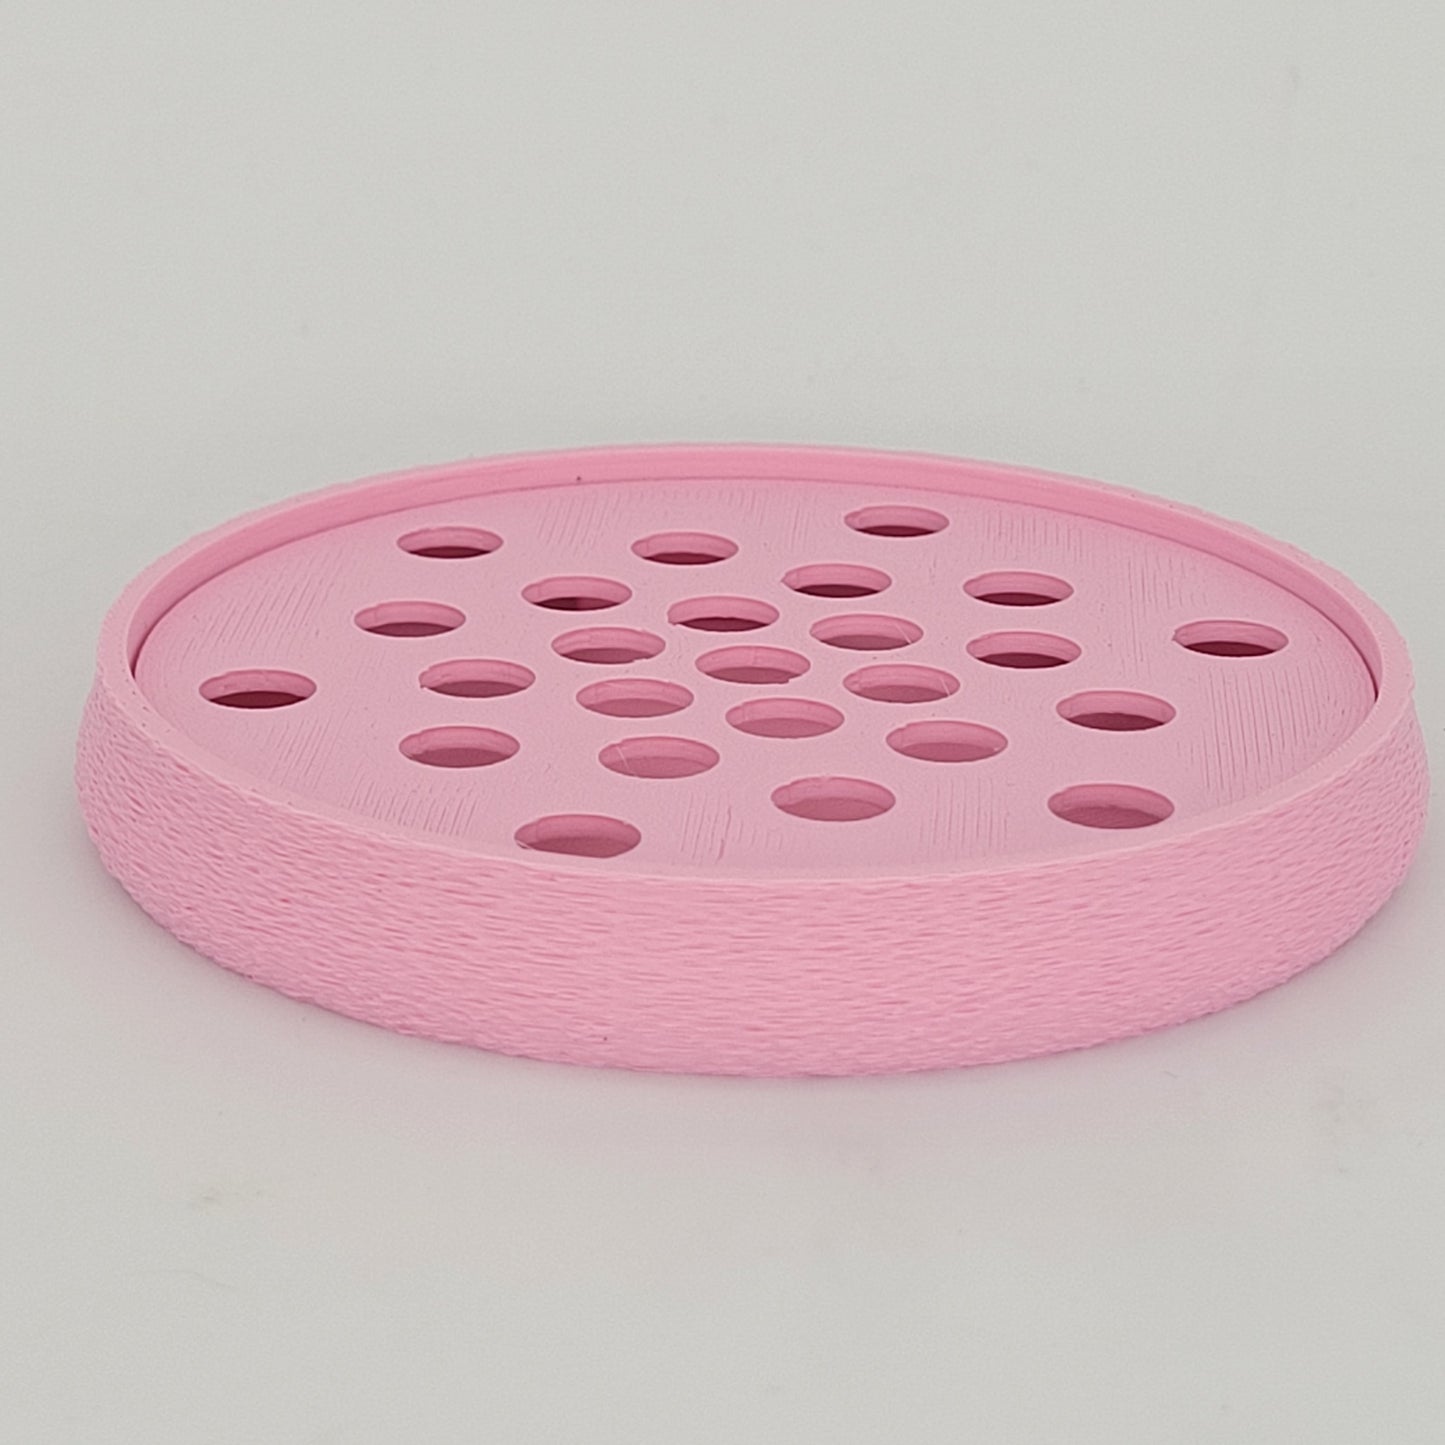 Porte-savons rond éco-responsable imprimé en 3D